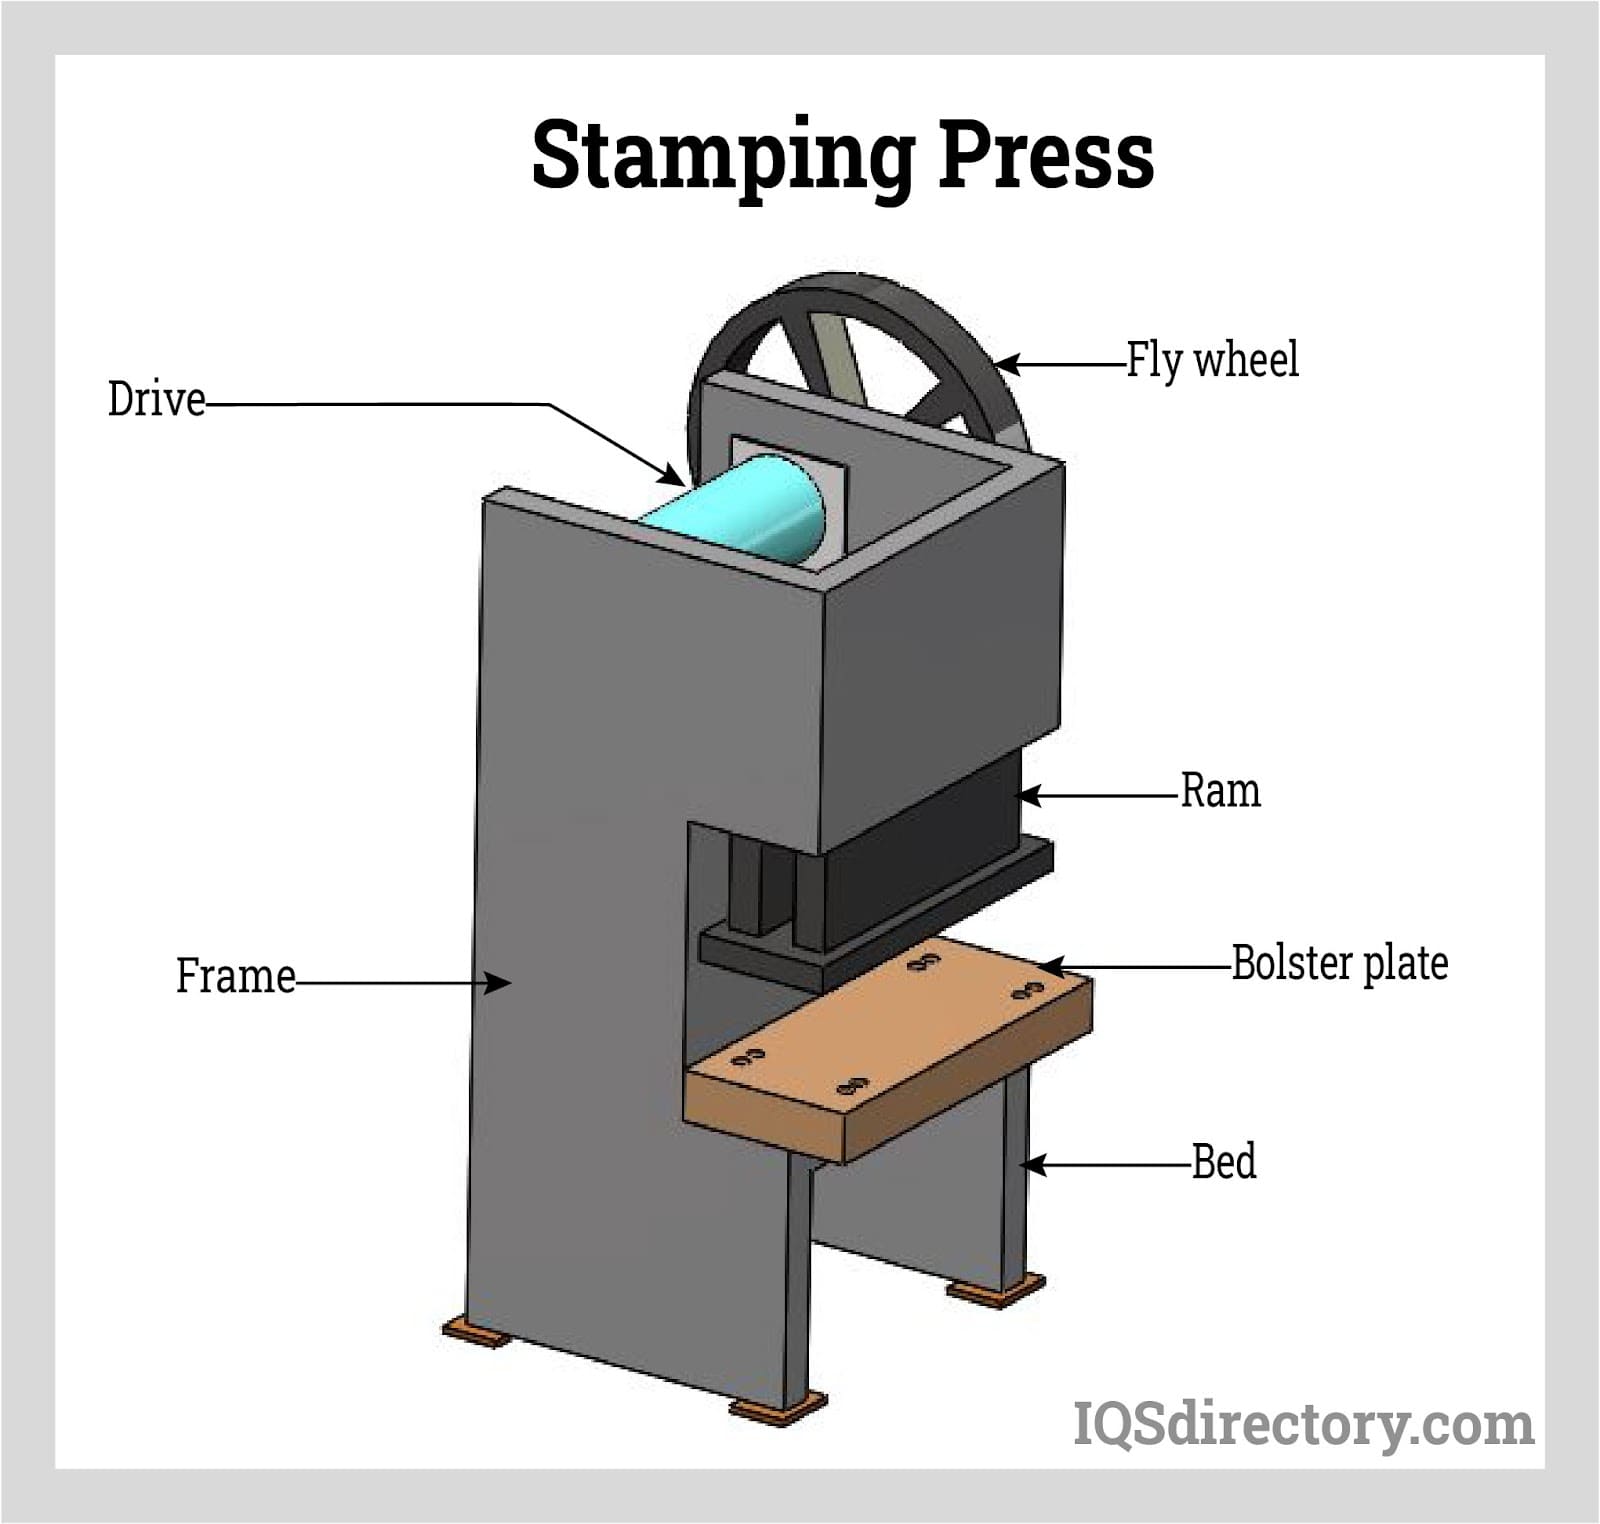 Stamping Press